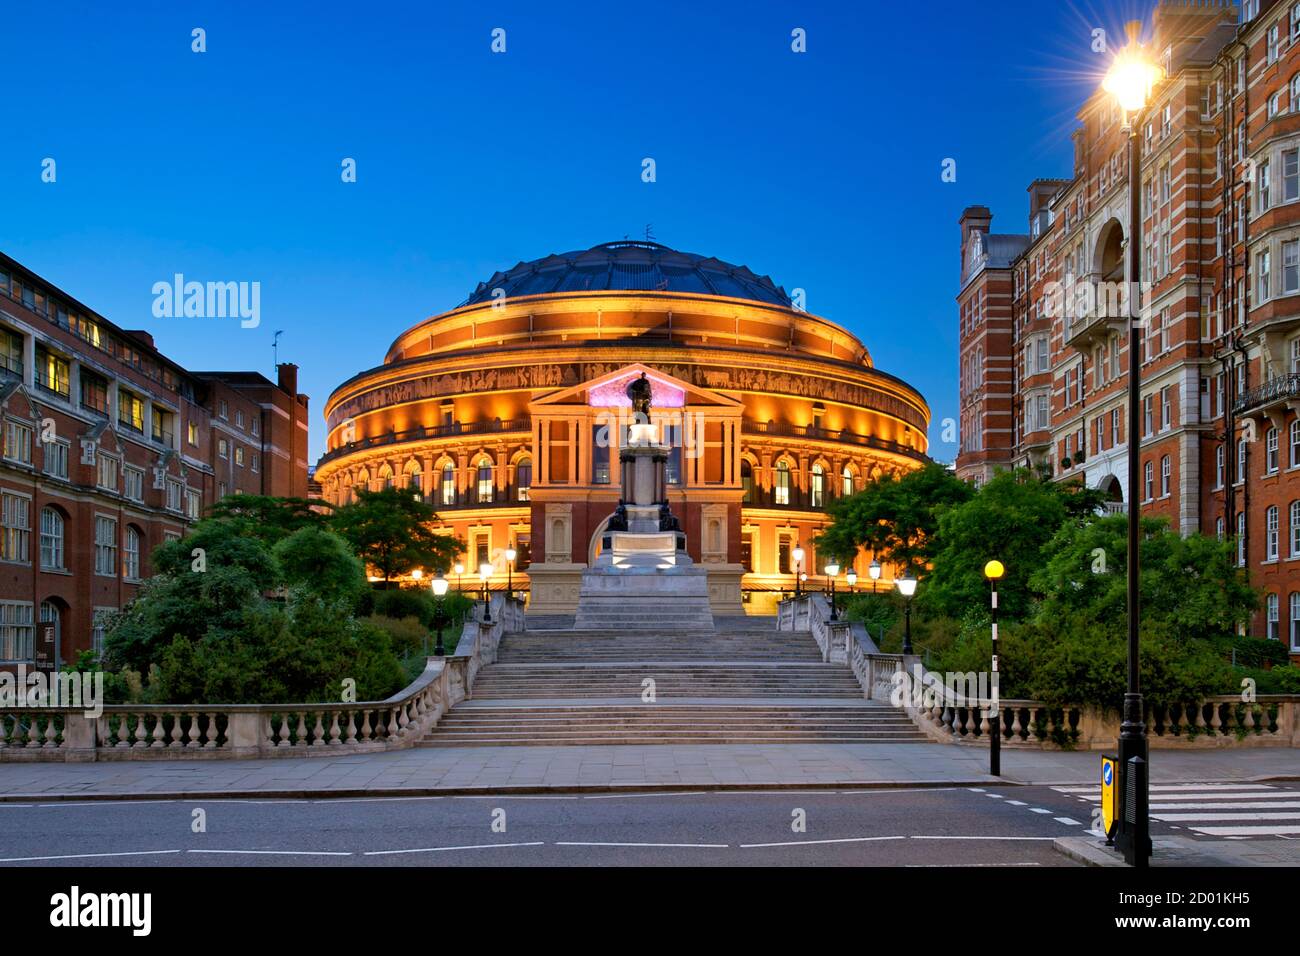 El Royal Albert Hall de Londres al anochecer. Foto de stock